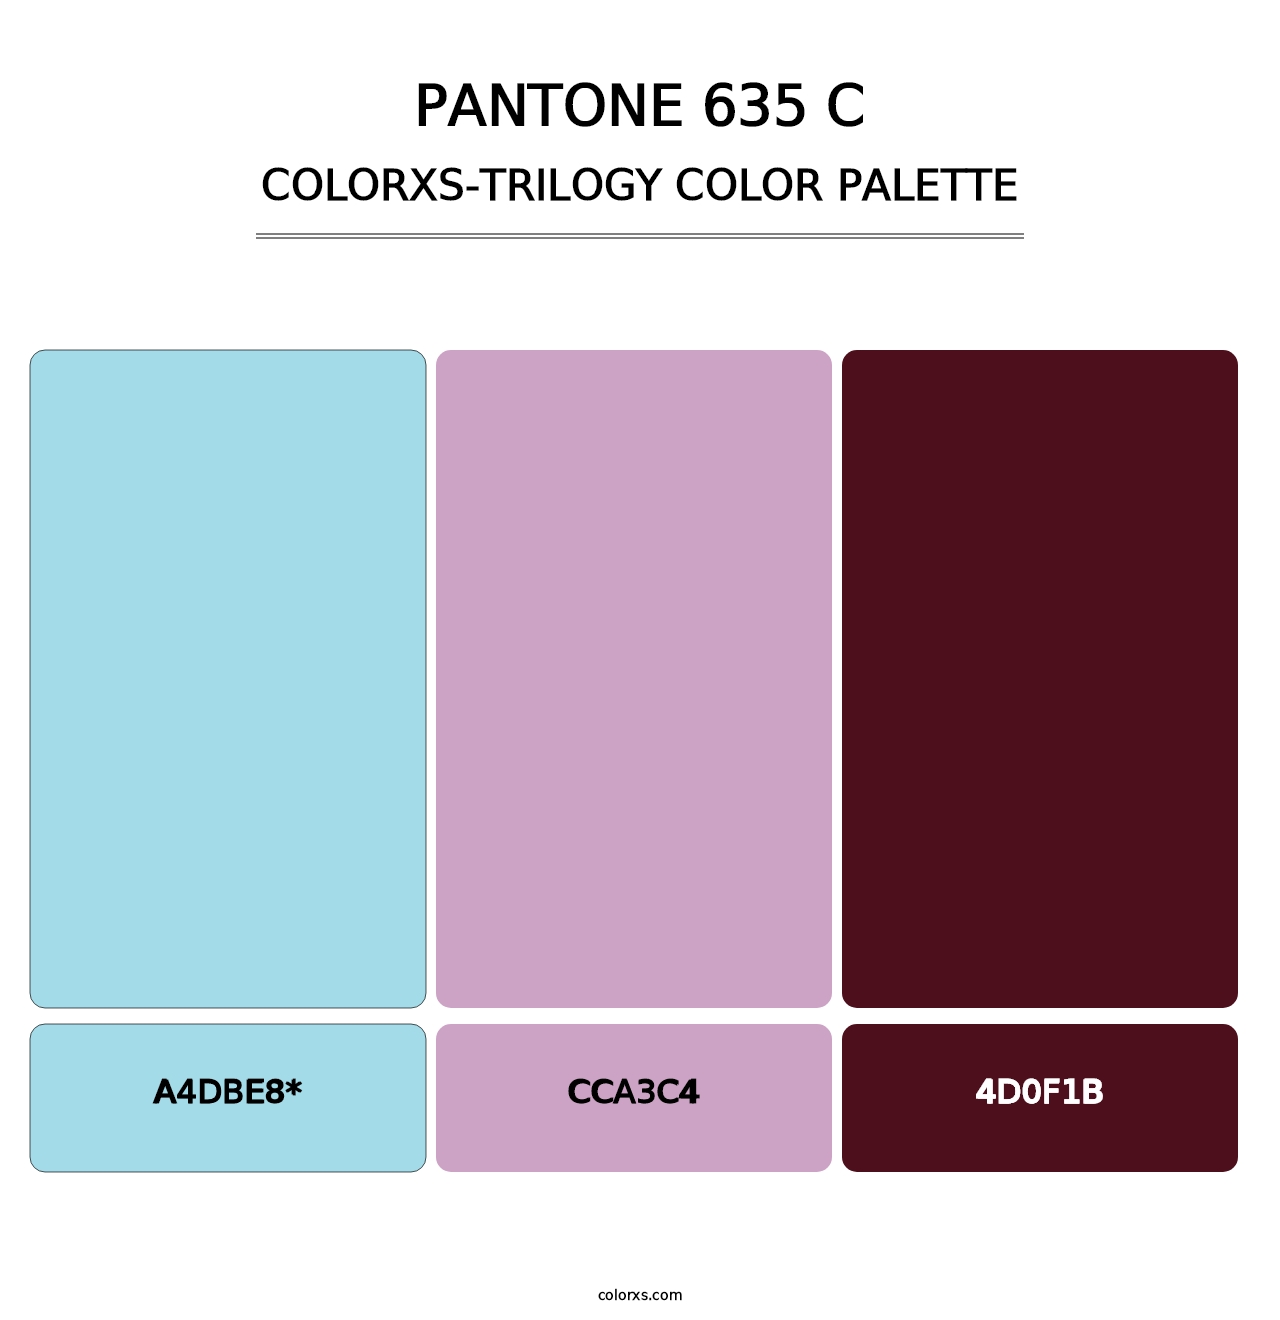 PANTONE 635 C - Colorxs Trilogy Palette